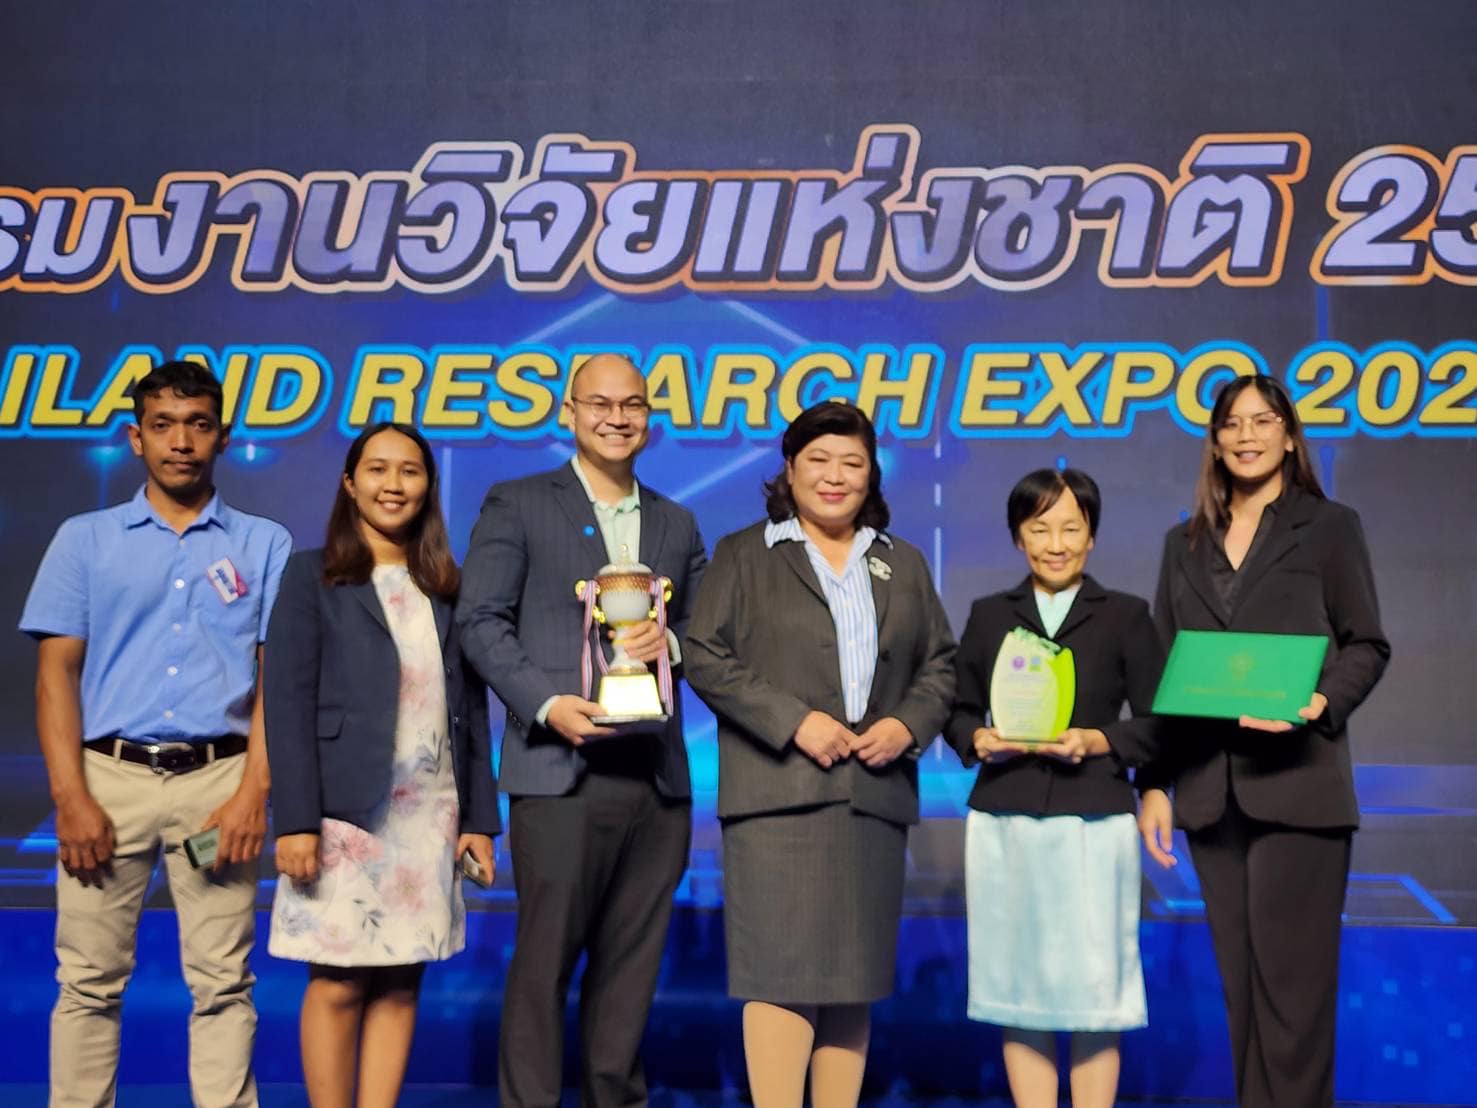 มหาวิทยาลัยวลัยลักษณ์ ได้รับรางวัล Silver award พร้อมเงินรางวัล 50,000 บาท จากงานมหกรรมงานวิจัยแห่งชาติ 2566 (Thailand Reseach Expo 2566)